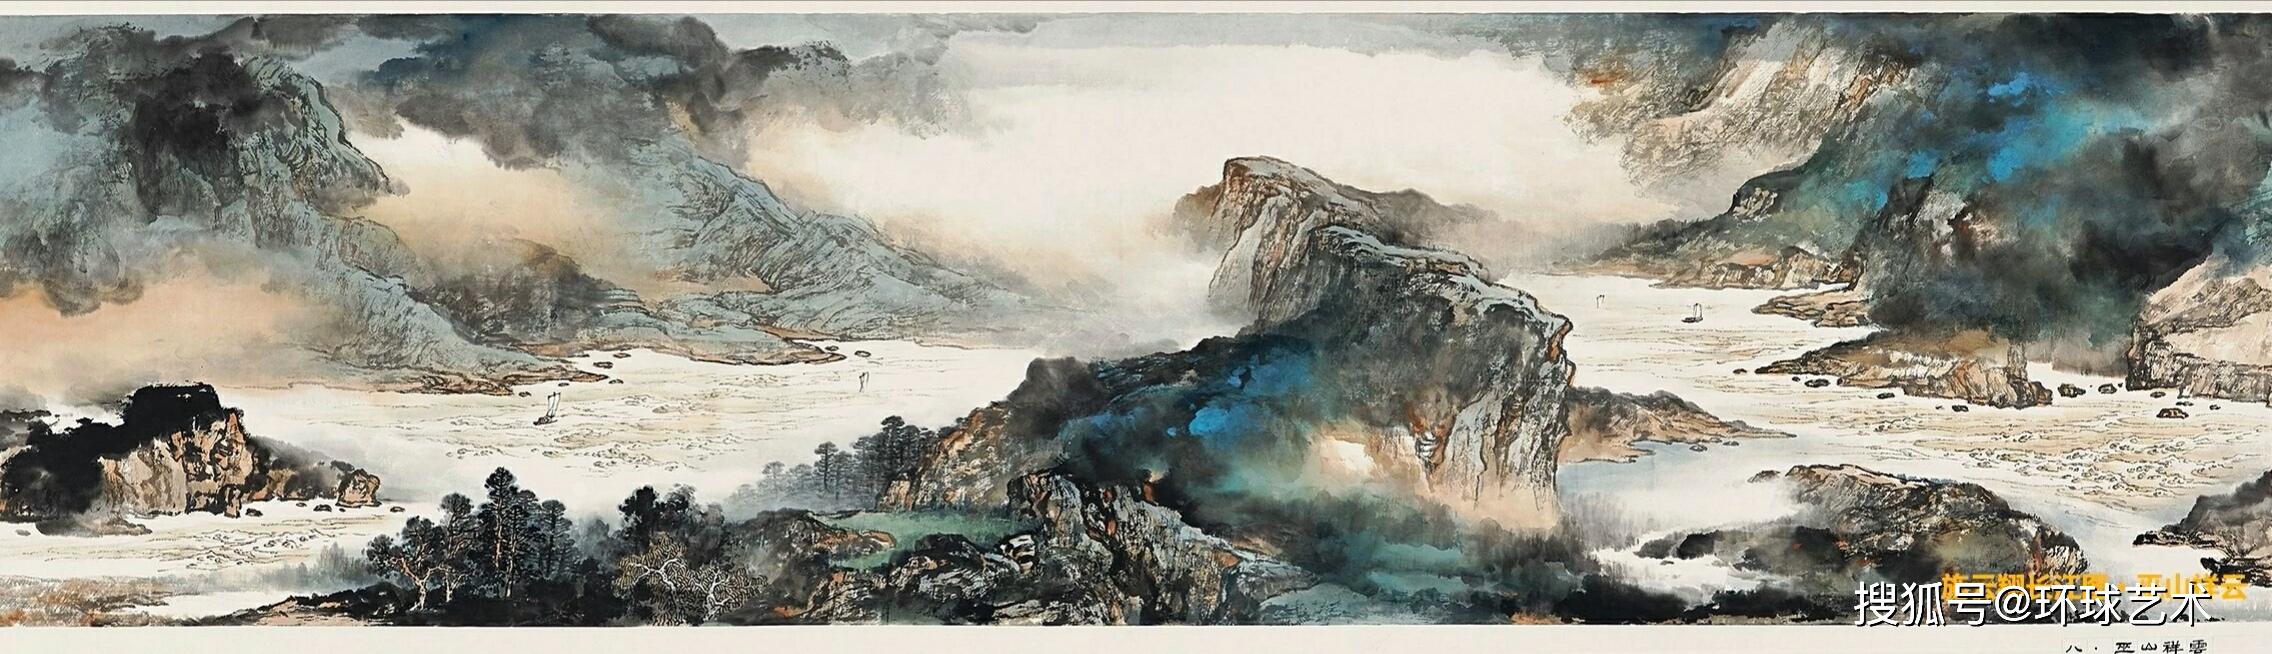 环球艺术:中国著名山水画家【施云翔】长江万里图